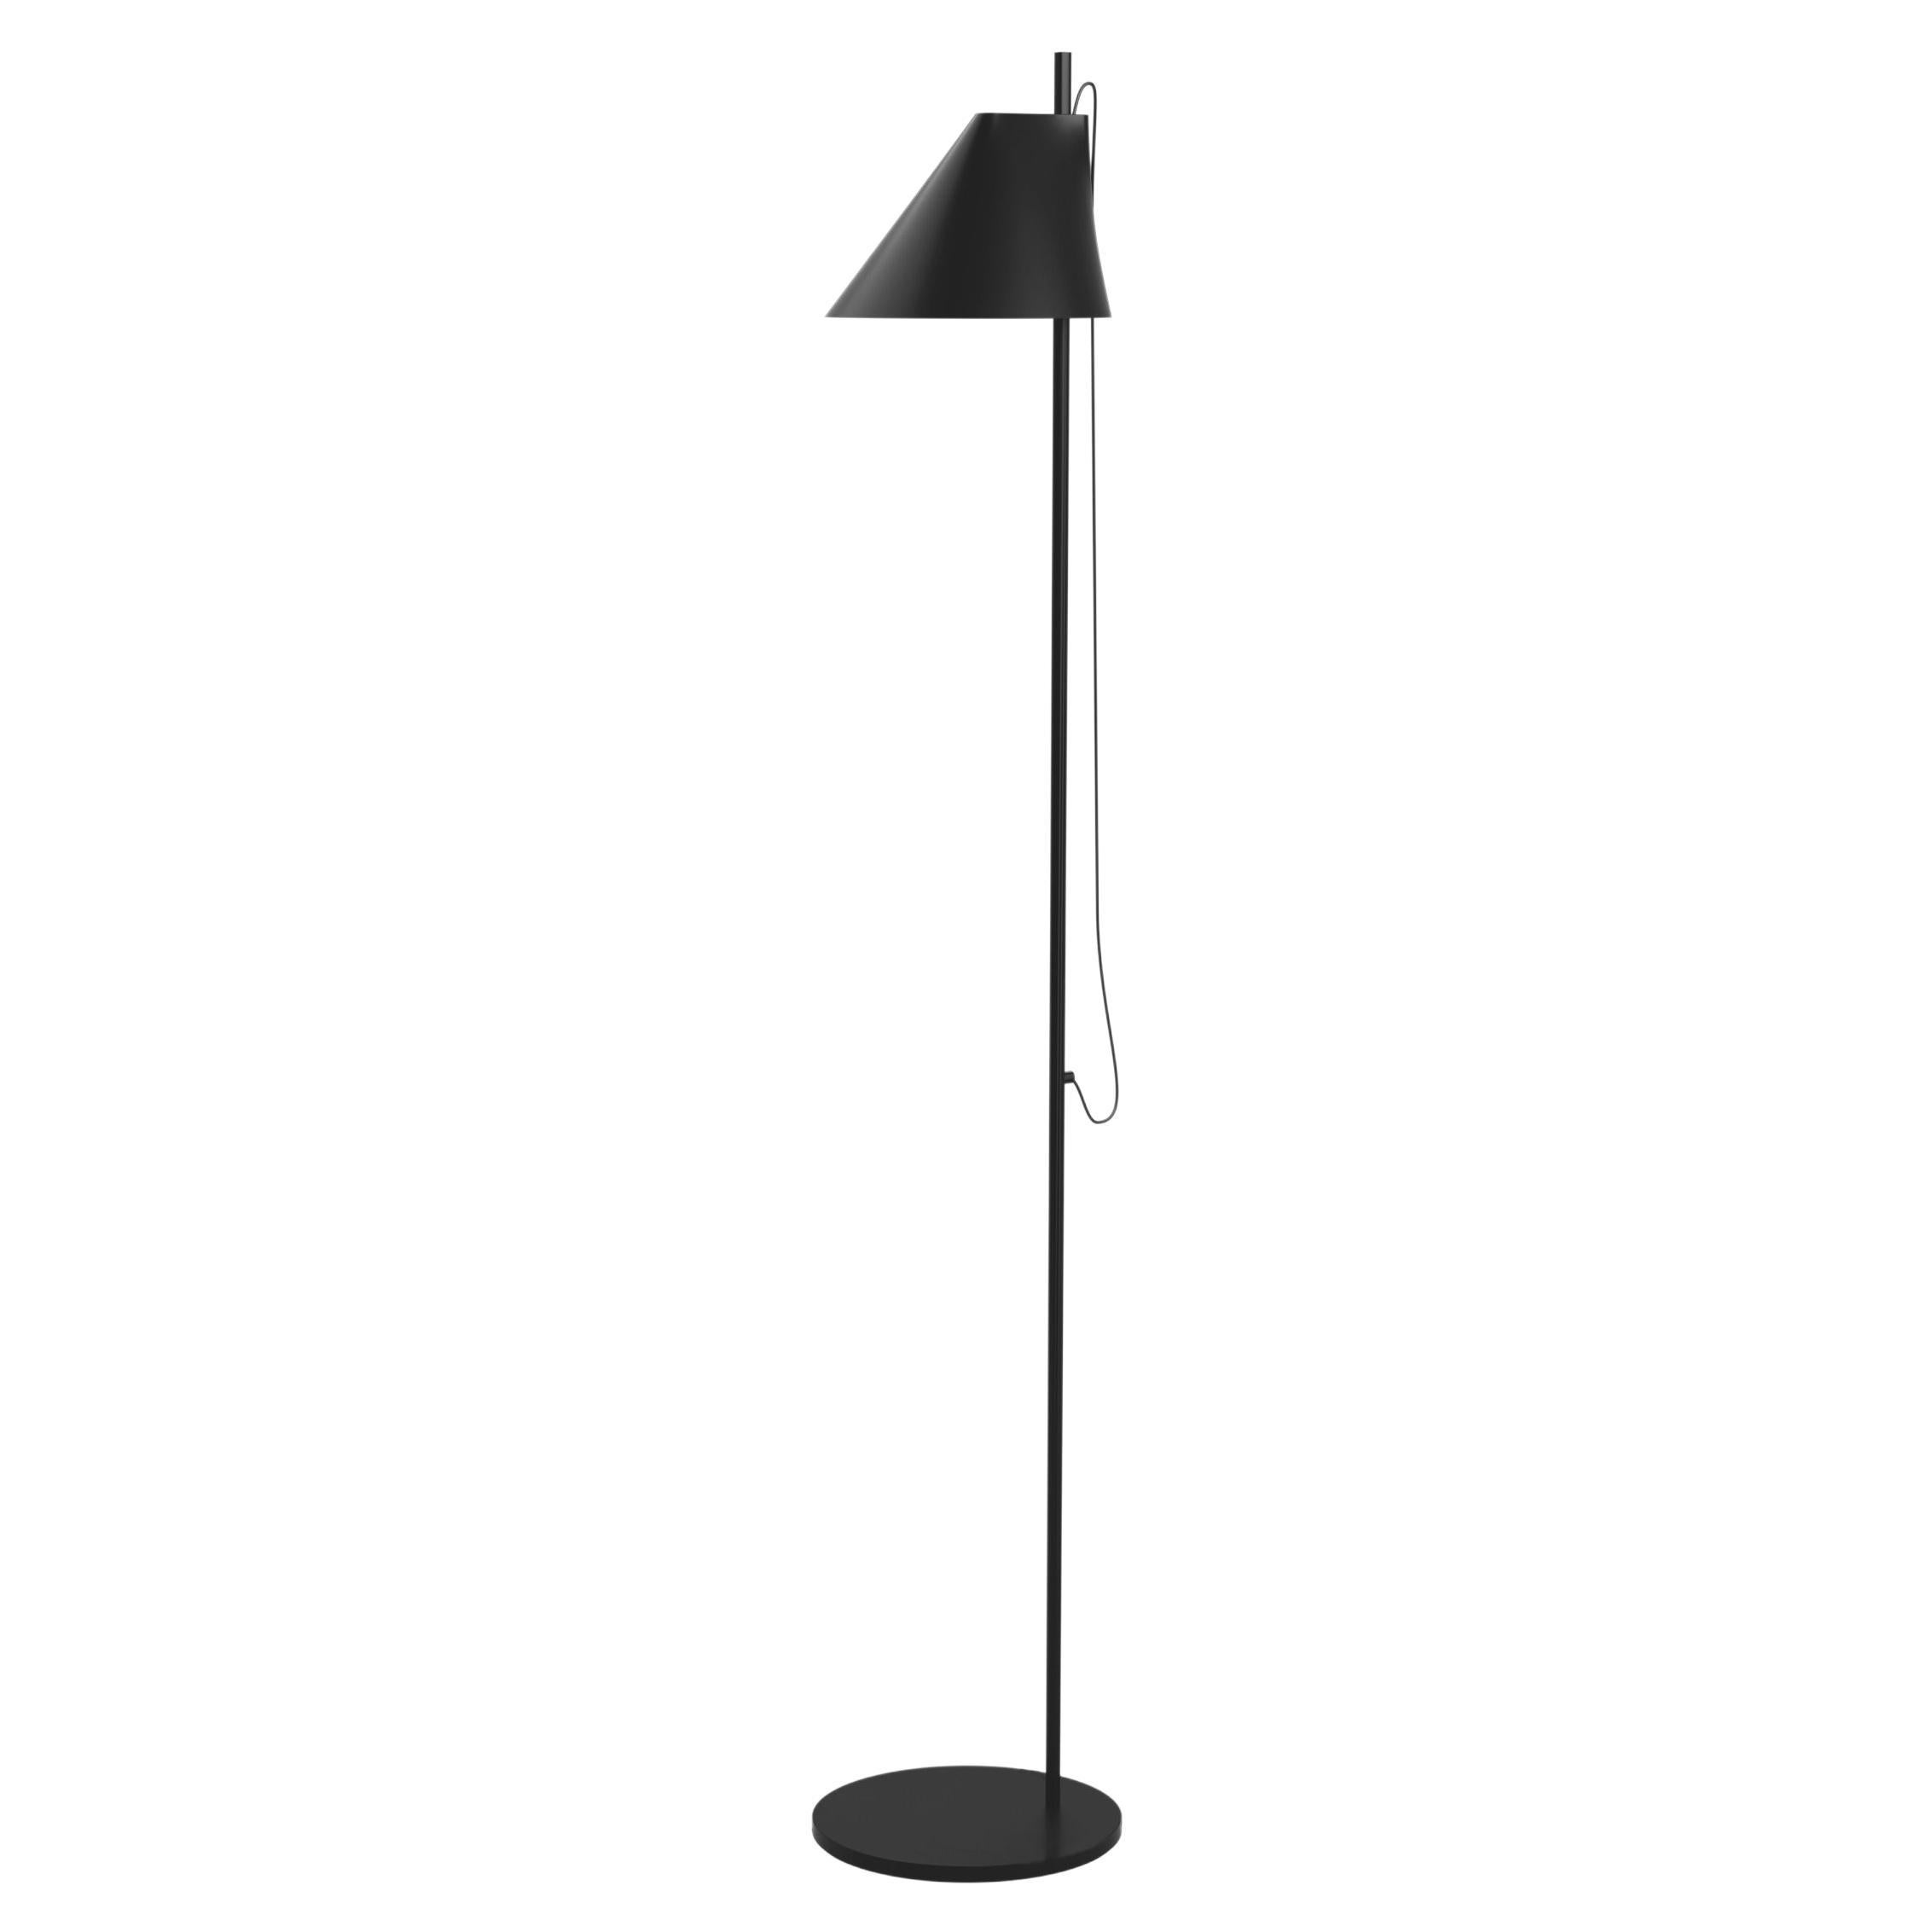 Louis Poulsen Yuh Floor Lamp in Black by GamFratesi